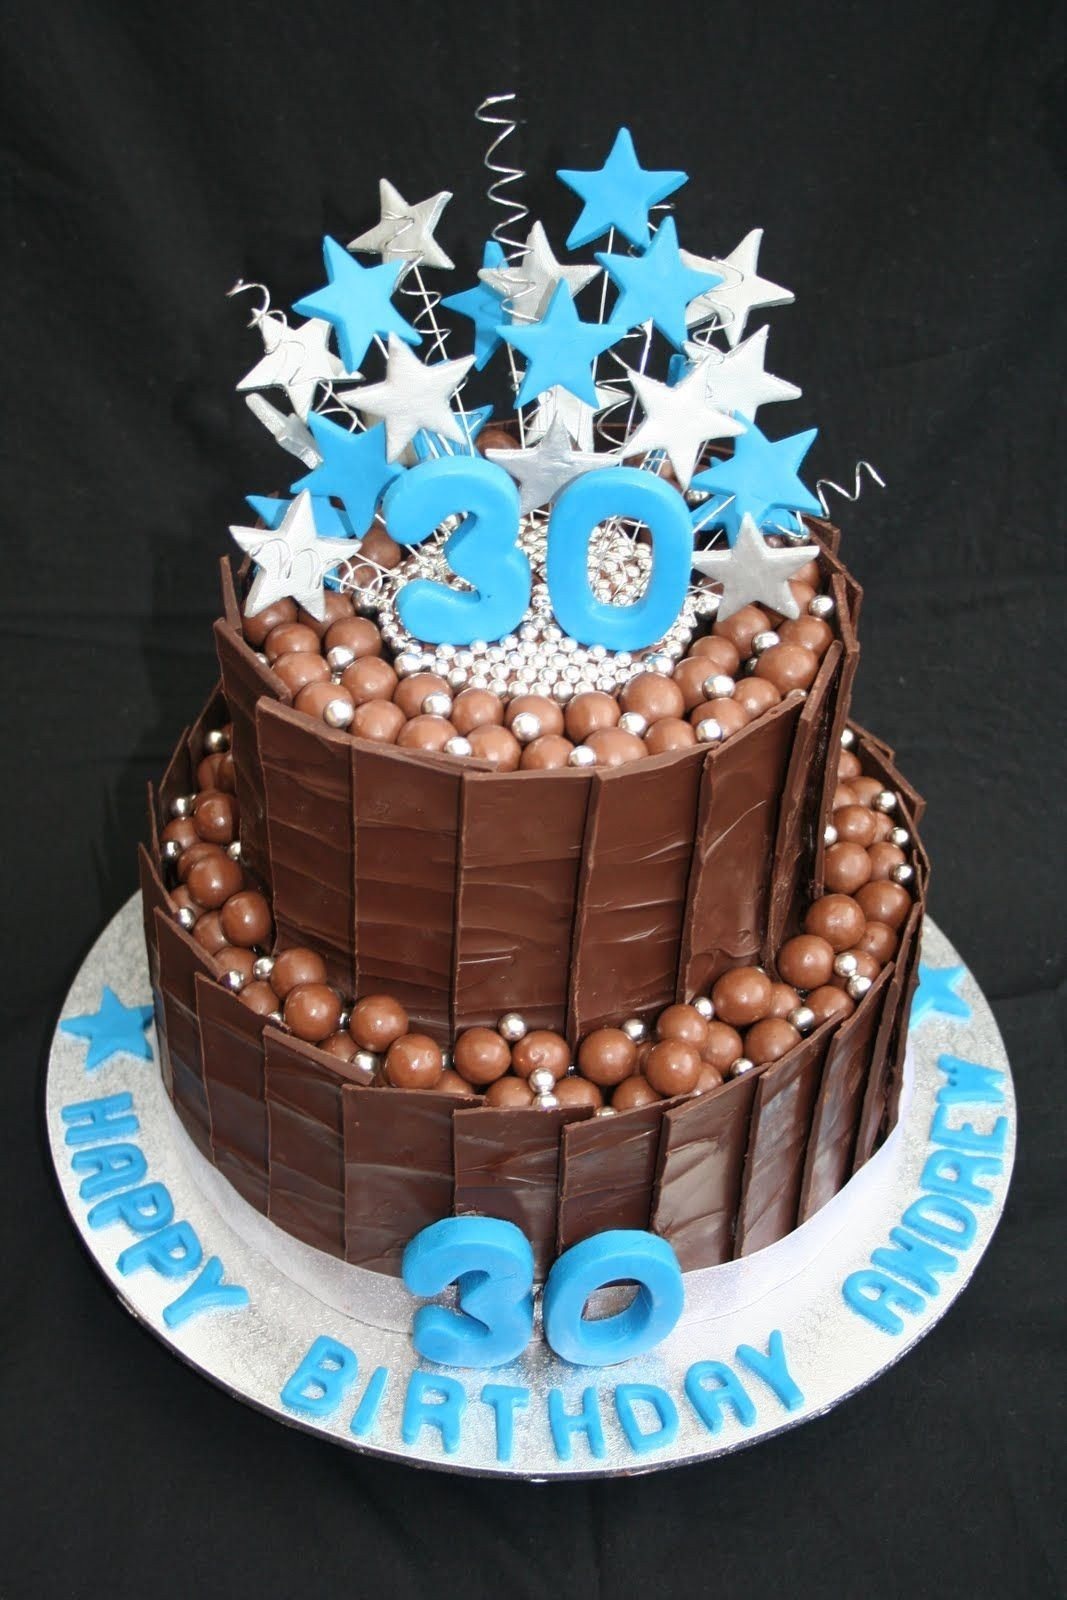 Birthday Cake Ideas for Men Beautiful 10 Gorgeous 30th Birthday Cake Ideas for Men 2021